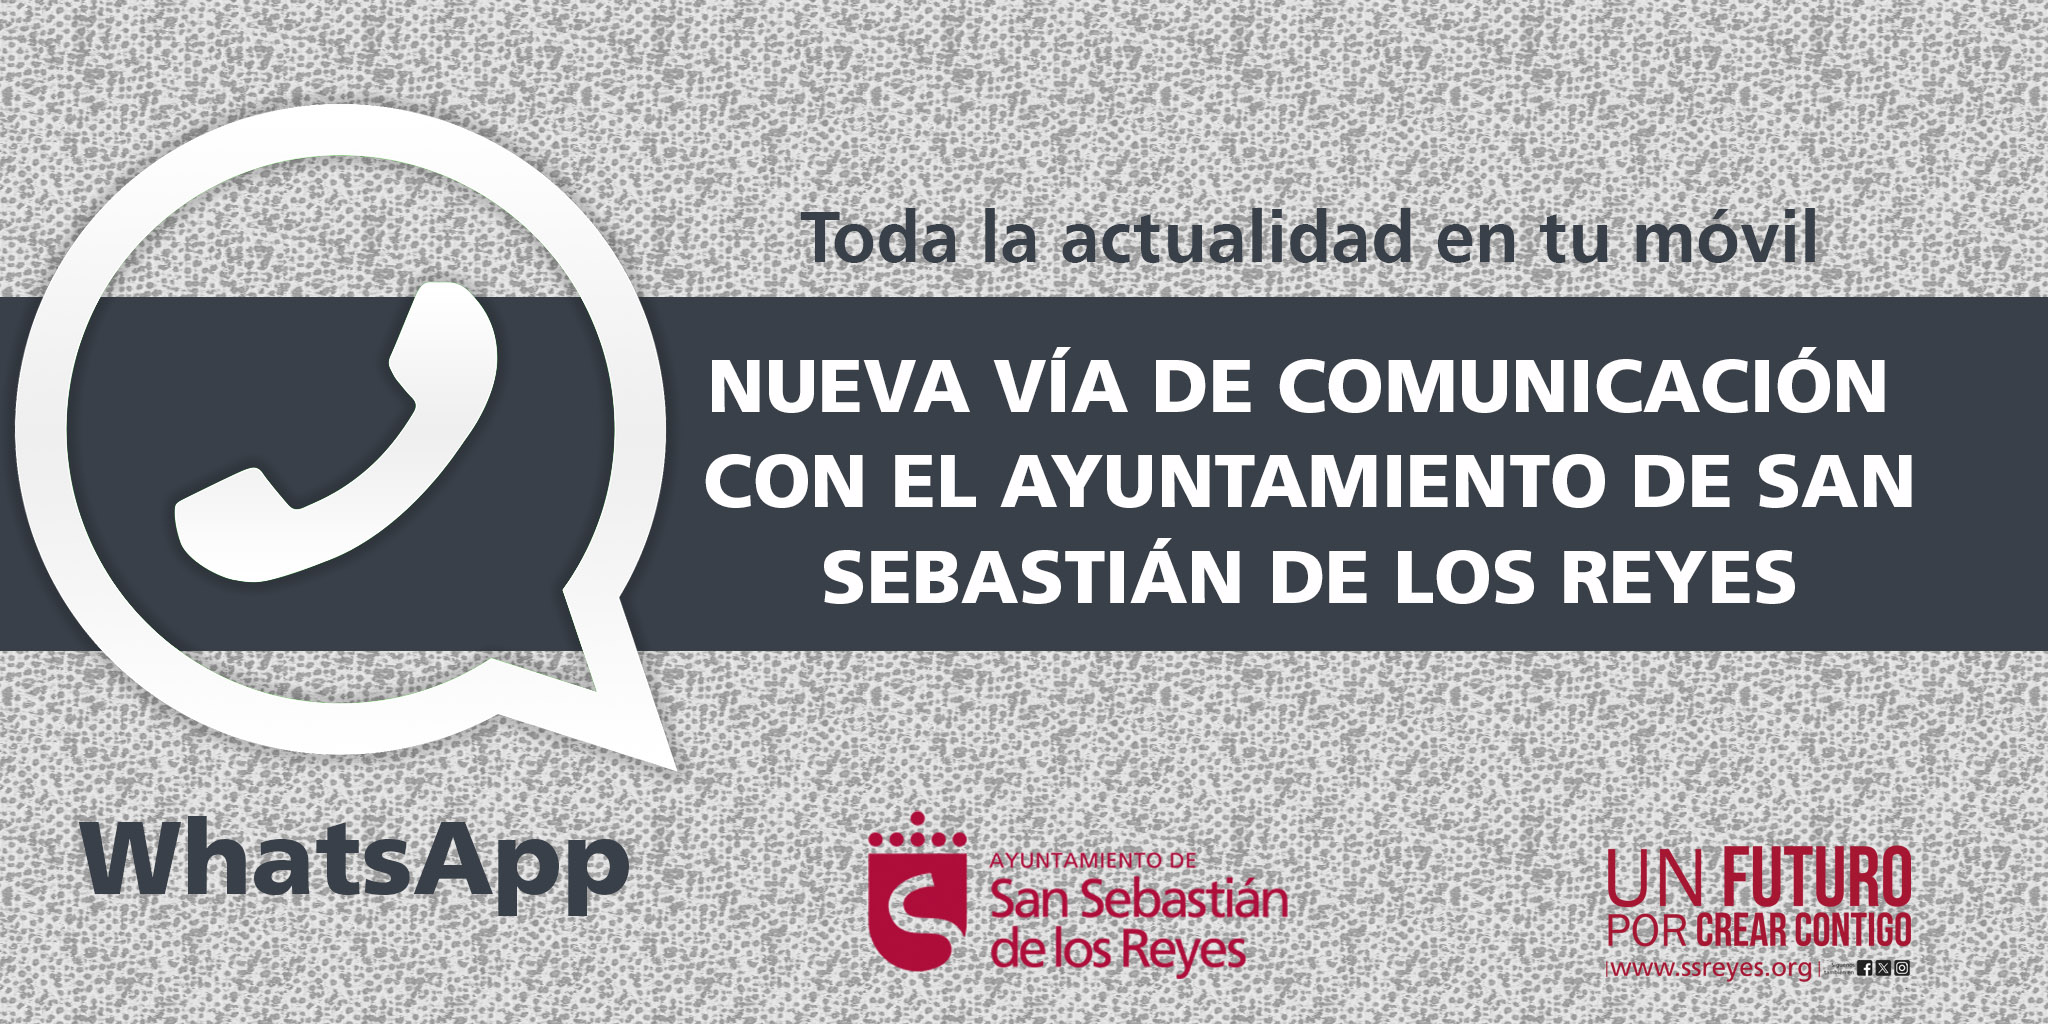  Rápido y directo, así es el nuevo canal de Whatsapp del Ayuntamiento de San Sebastián de los Reyes